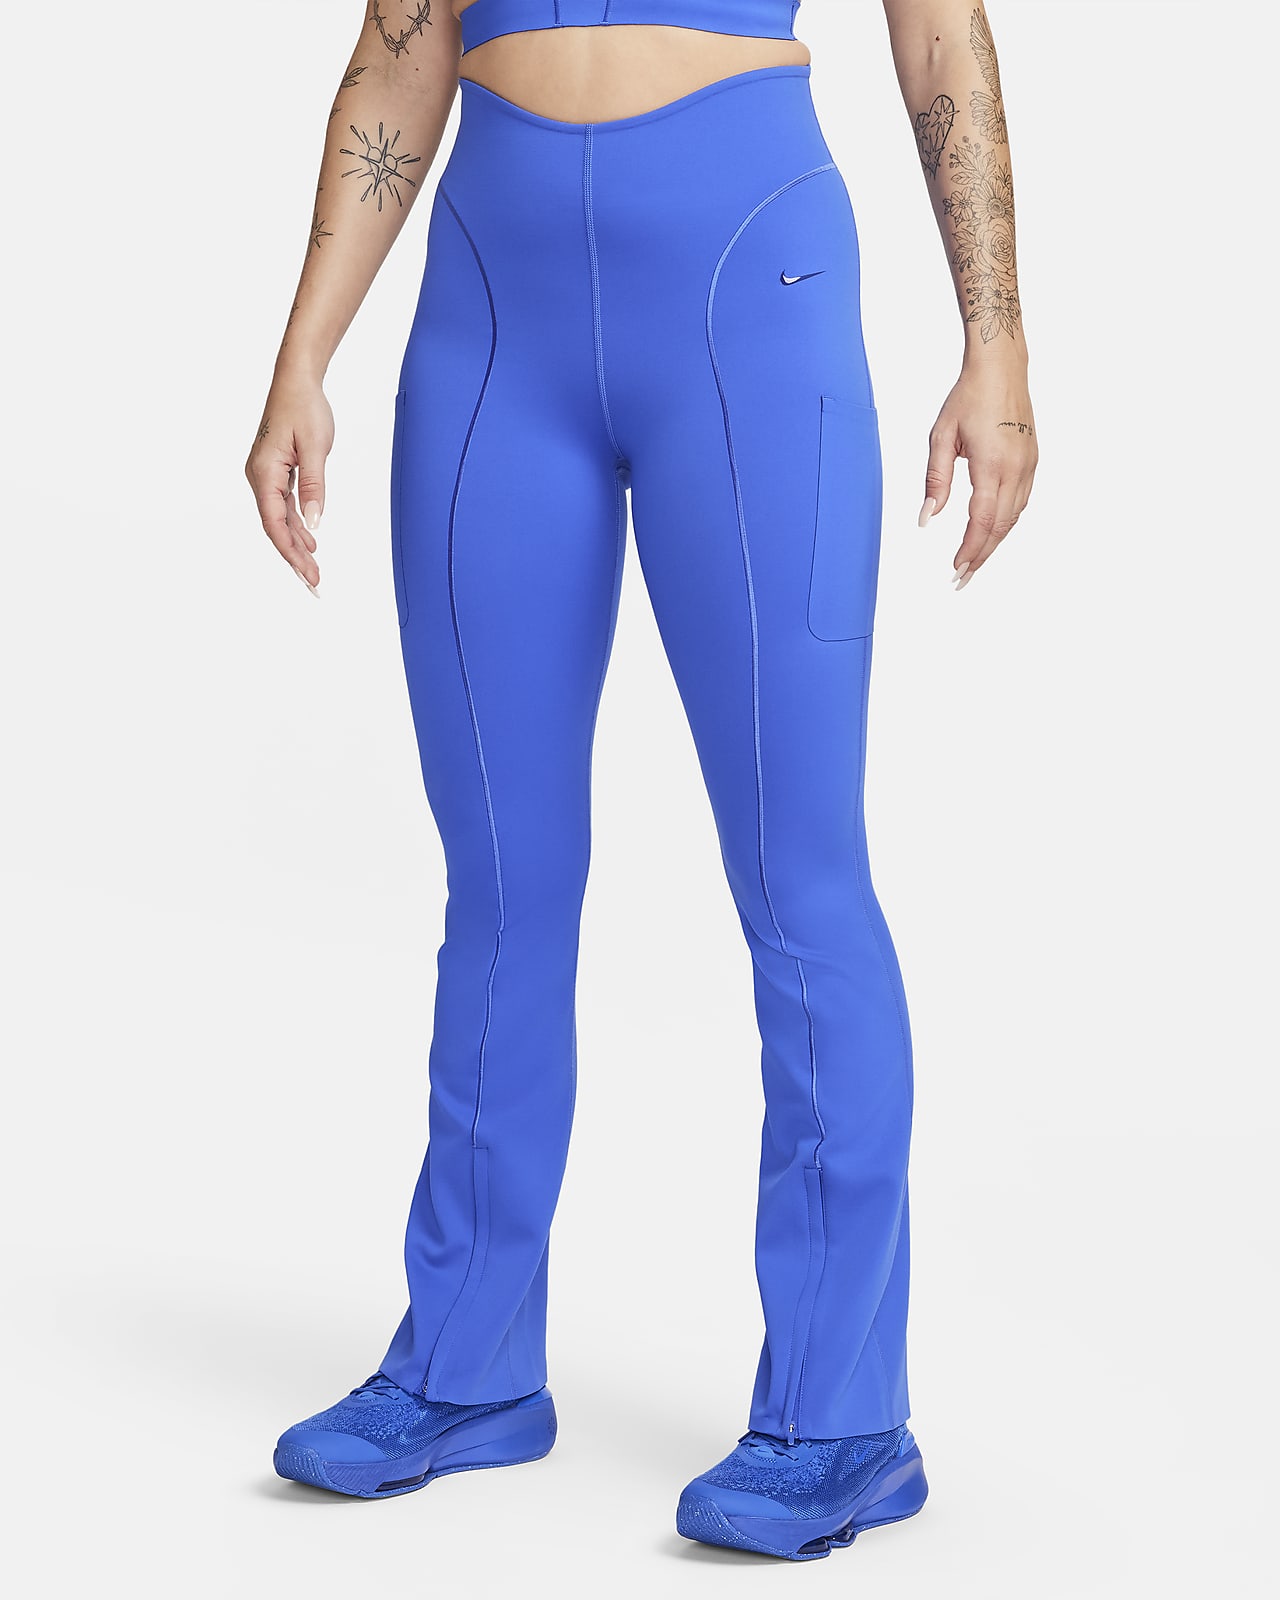 Nike Dri-Fit Women's Blue Capri Pants - L (12-14)